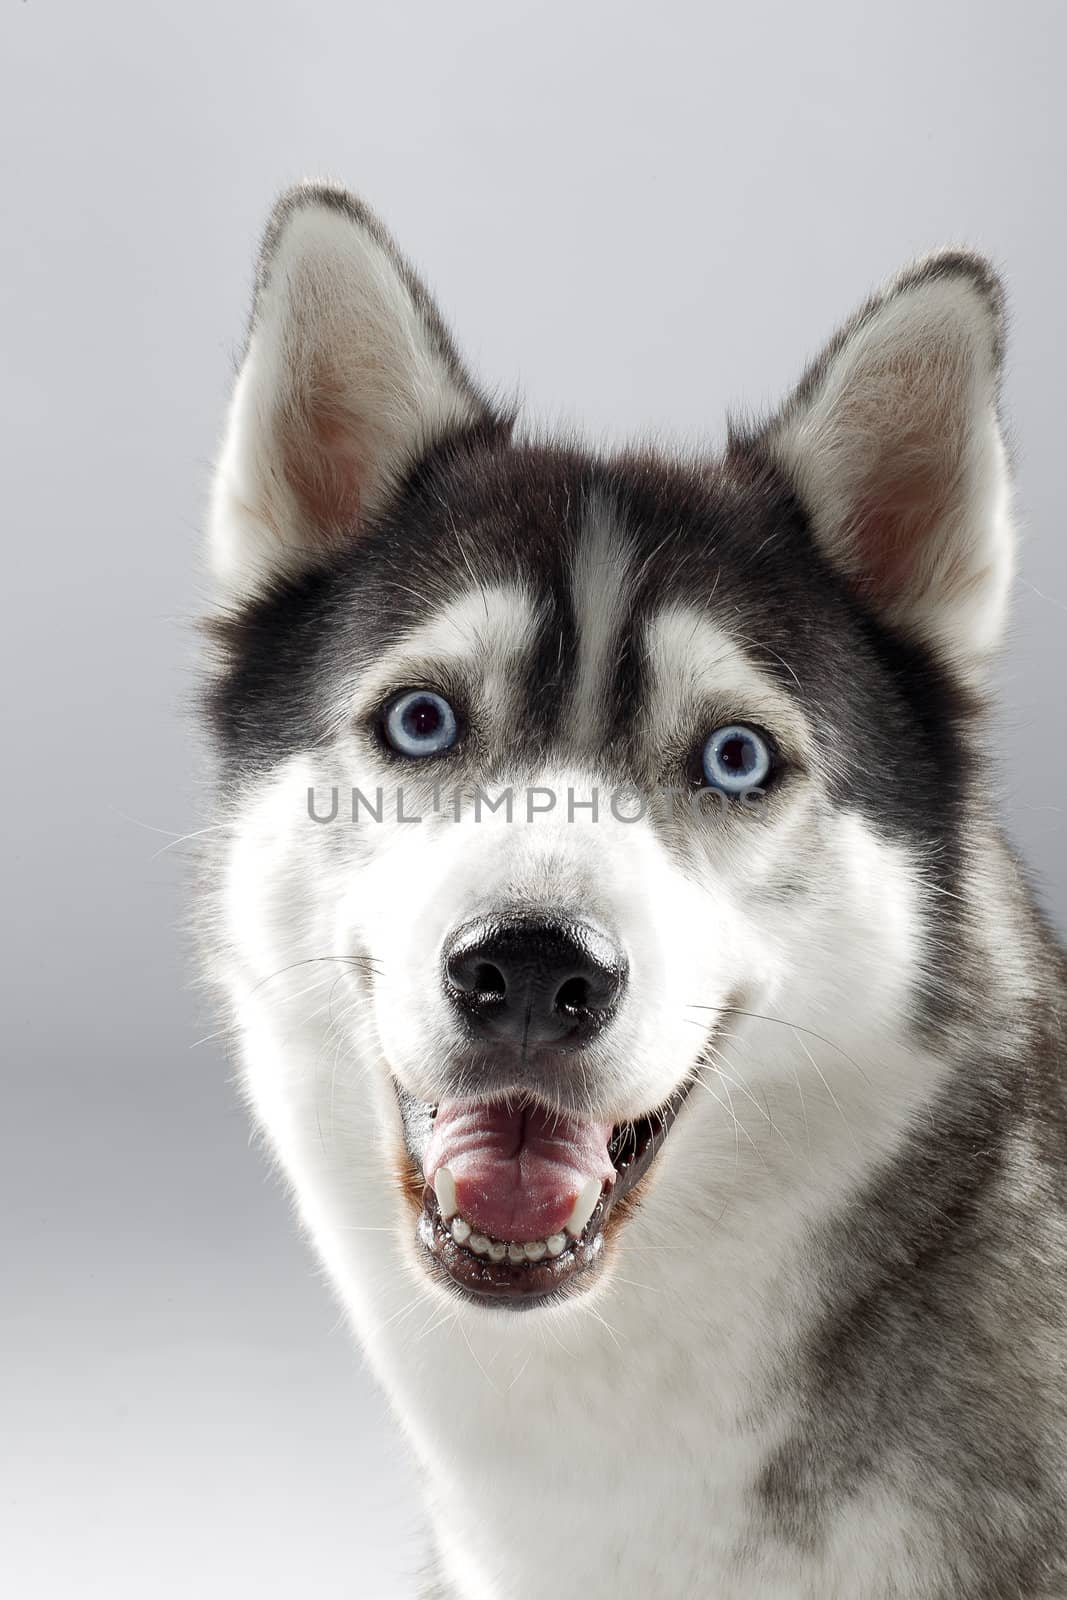 Pet dog smiling towards camera.